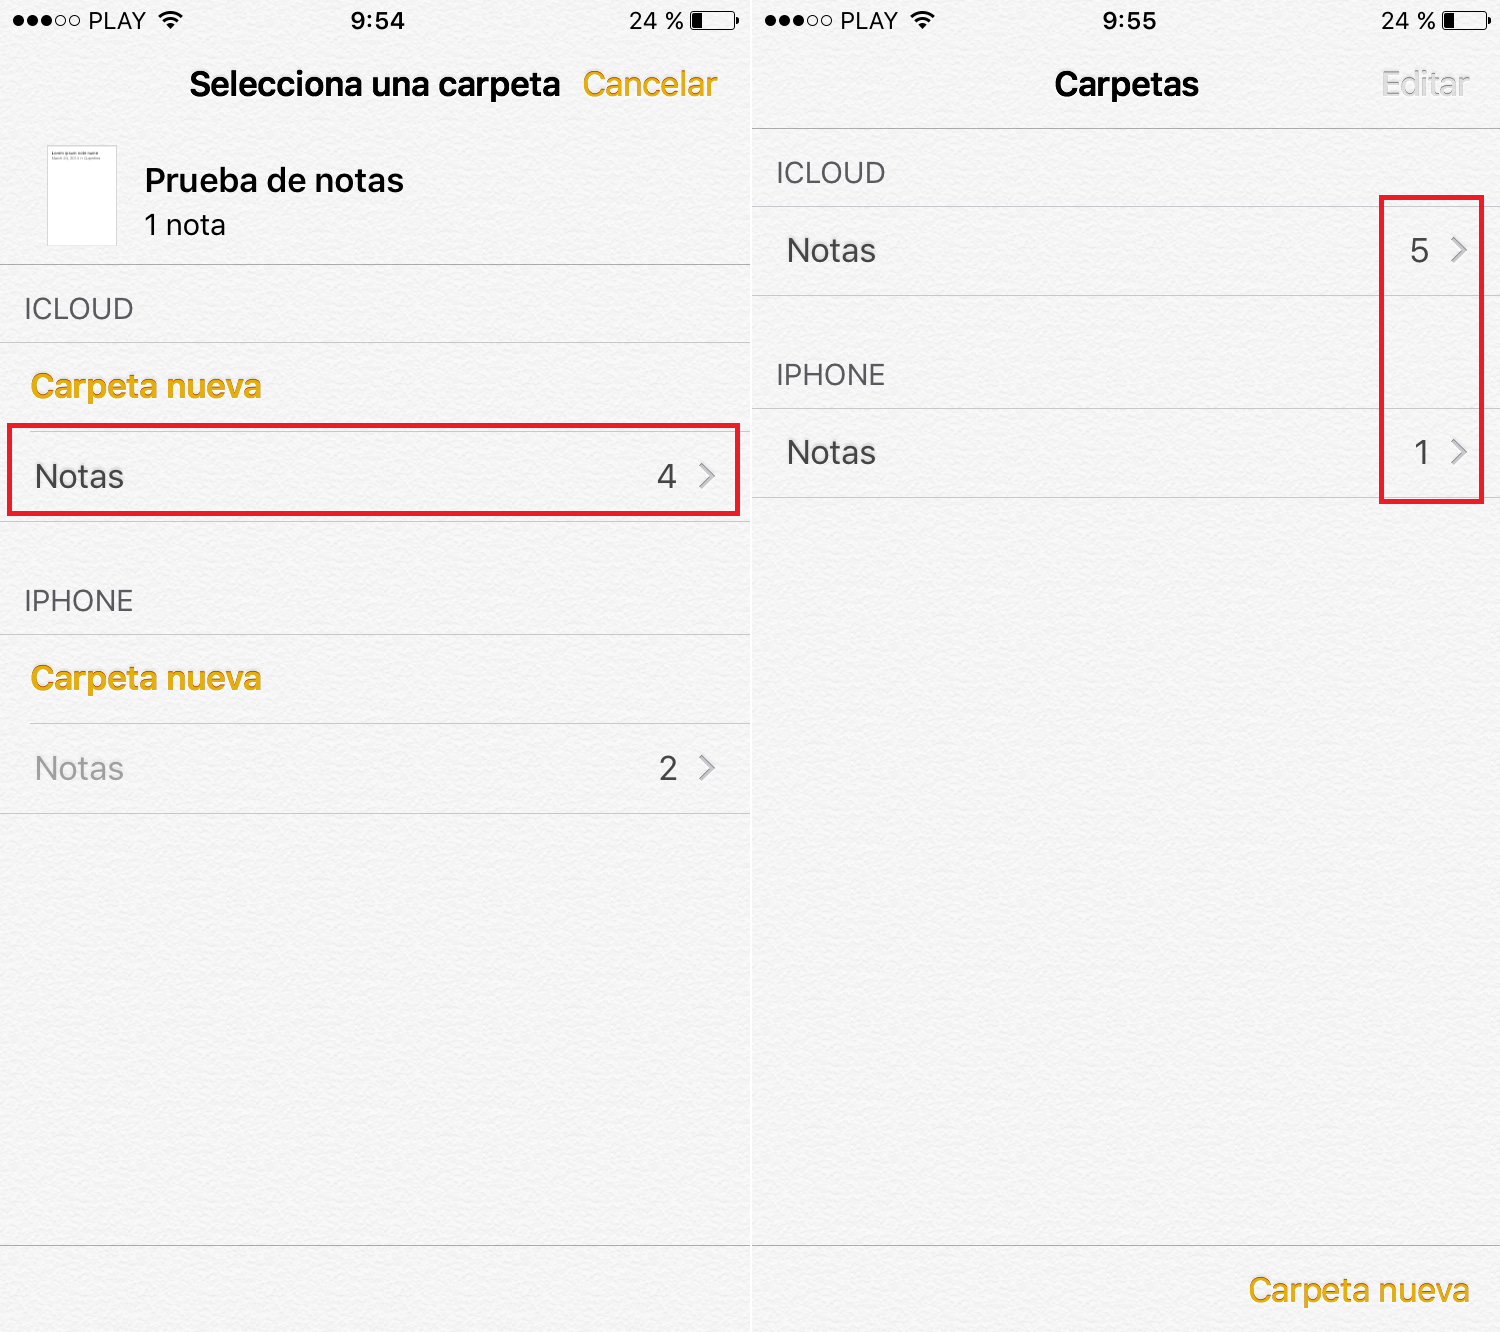 tralada las notas de tu iPhone con iOS a tu cuenta de iCloud